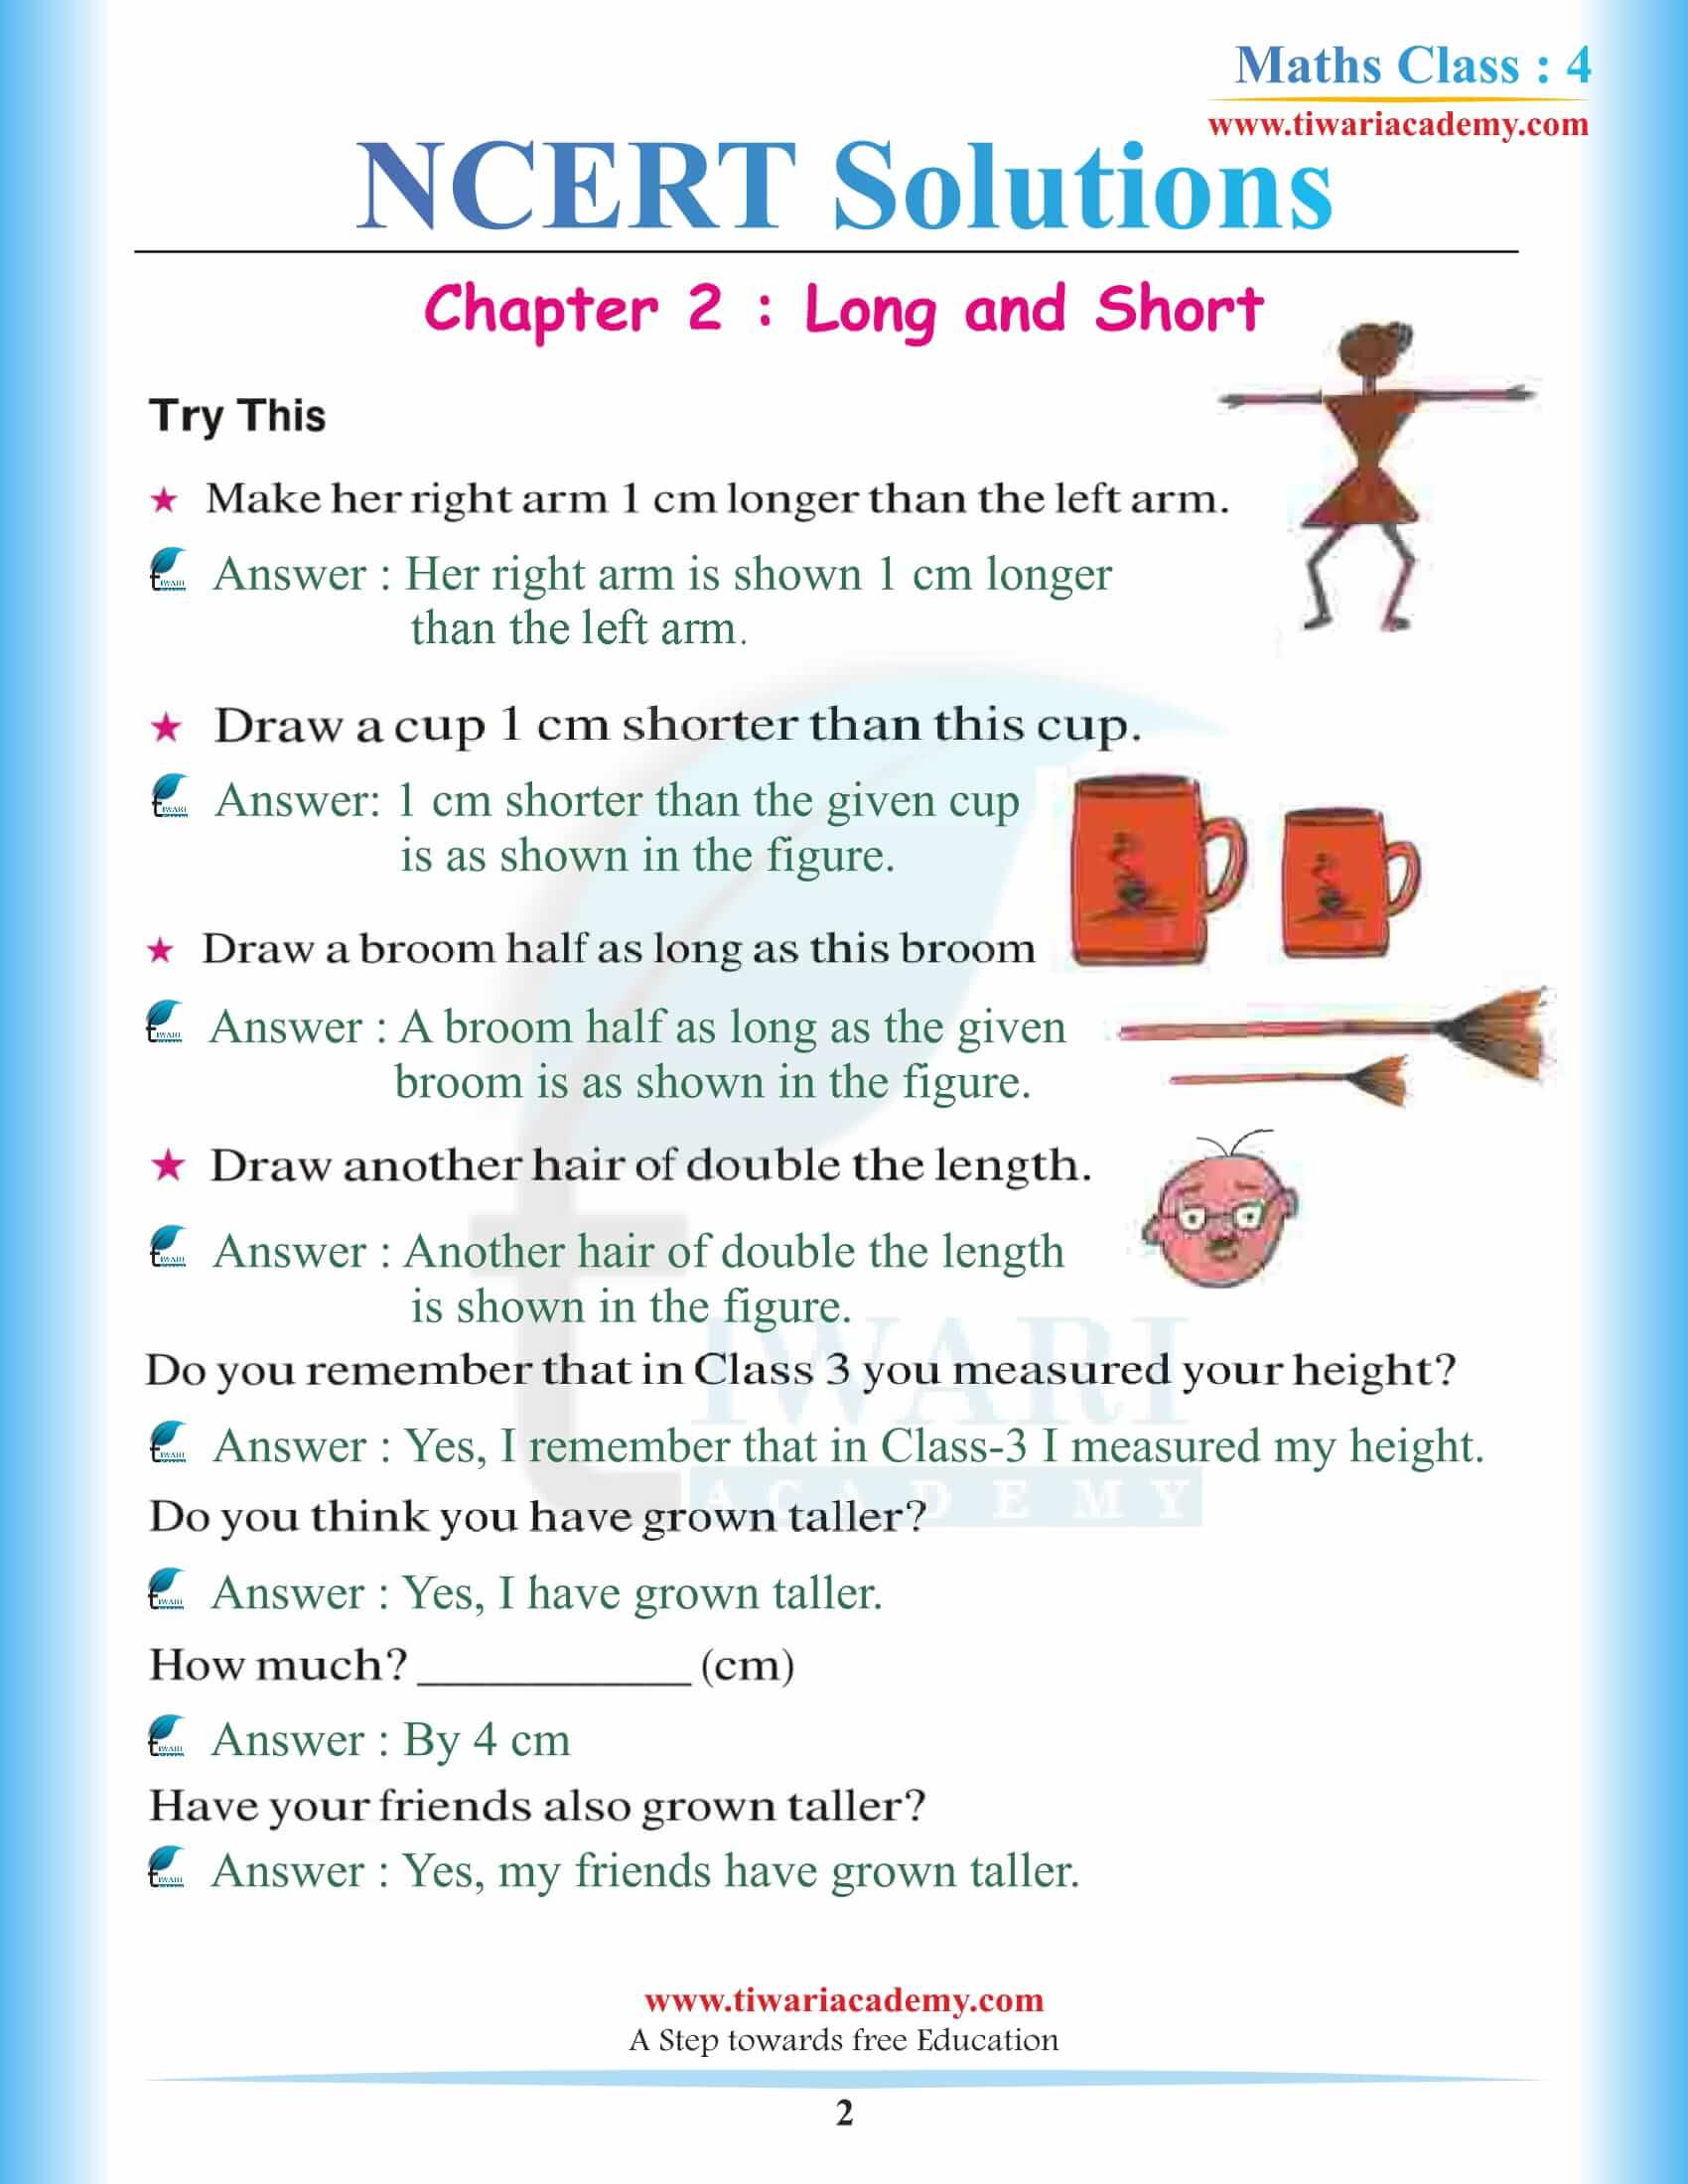 Class 4 Maths Chapter 2 Long and Short